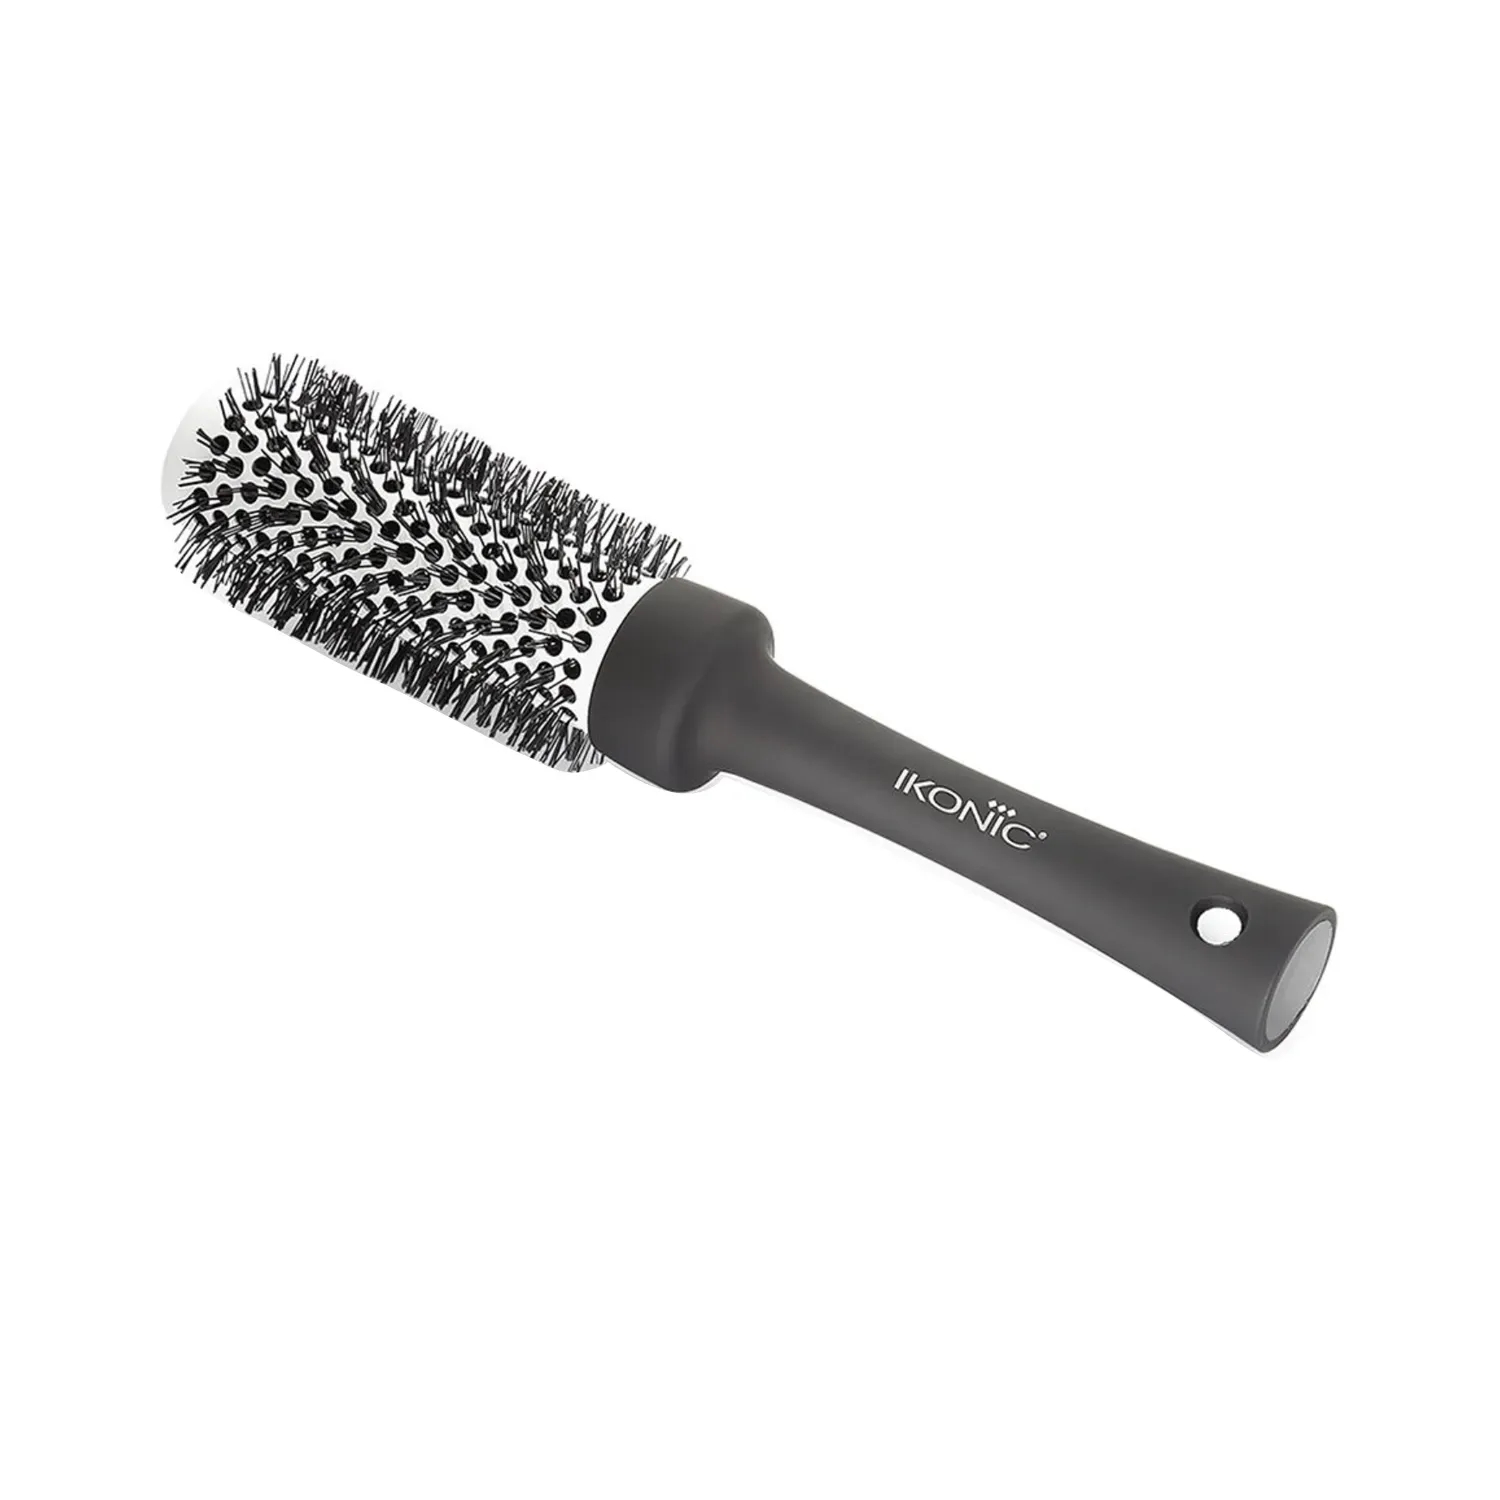 Ikonic Professional Blow Dry Brush - BDB 32 (Black & Grey)